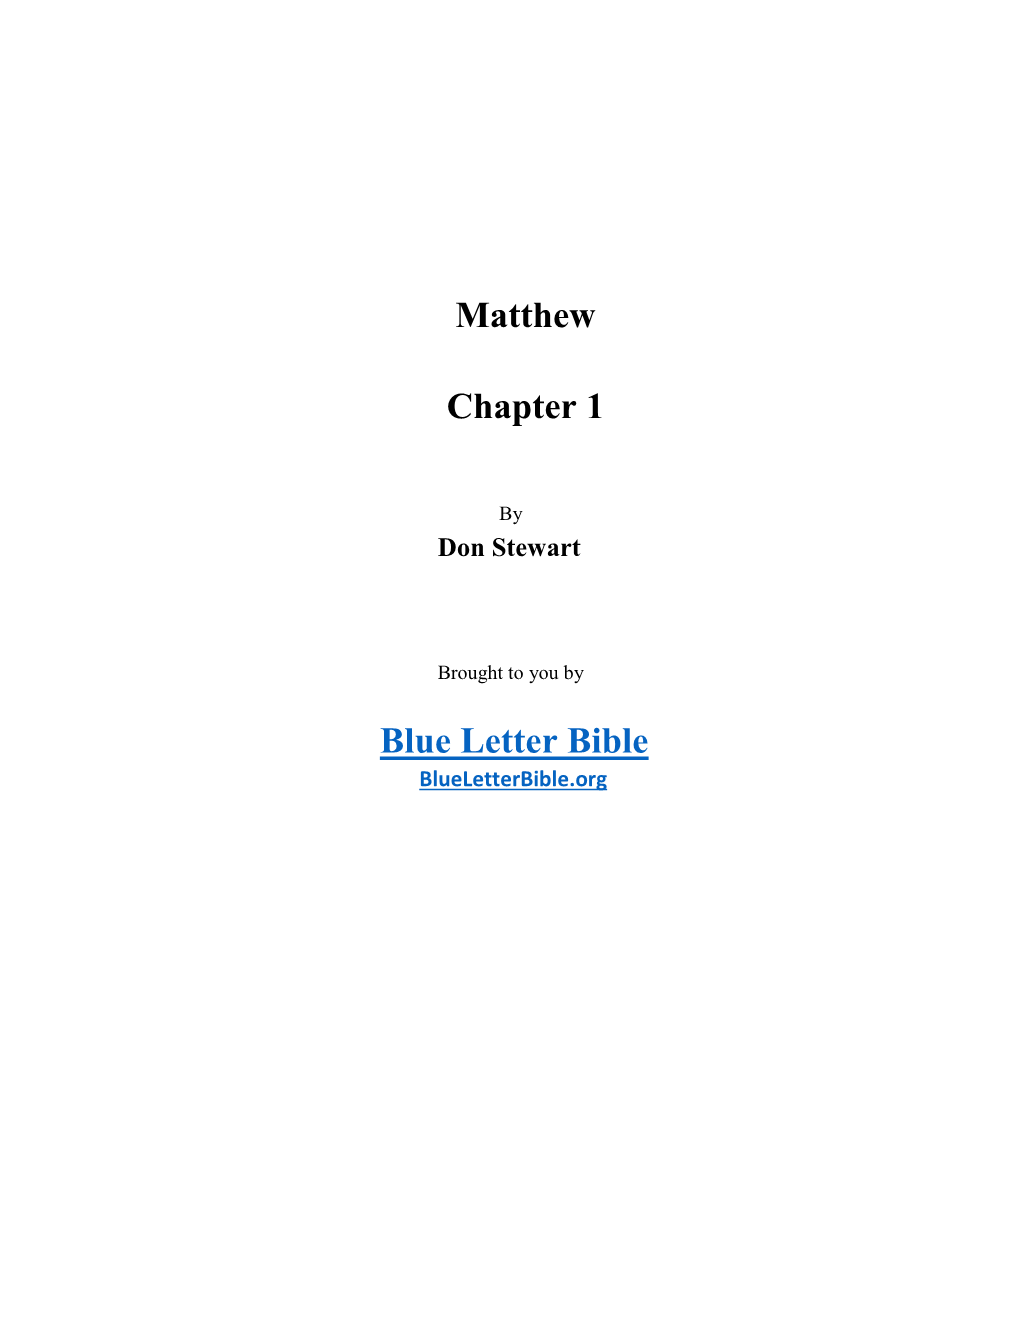 Matthew Chapter 1 Blue Letter Bible